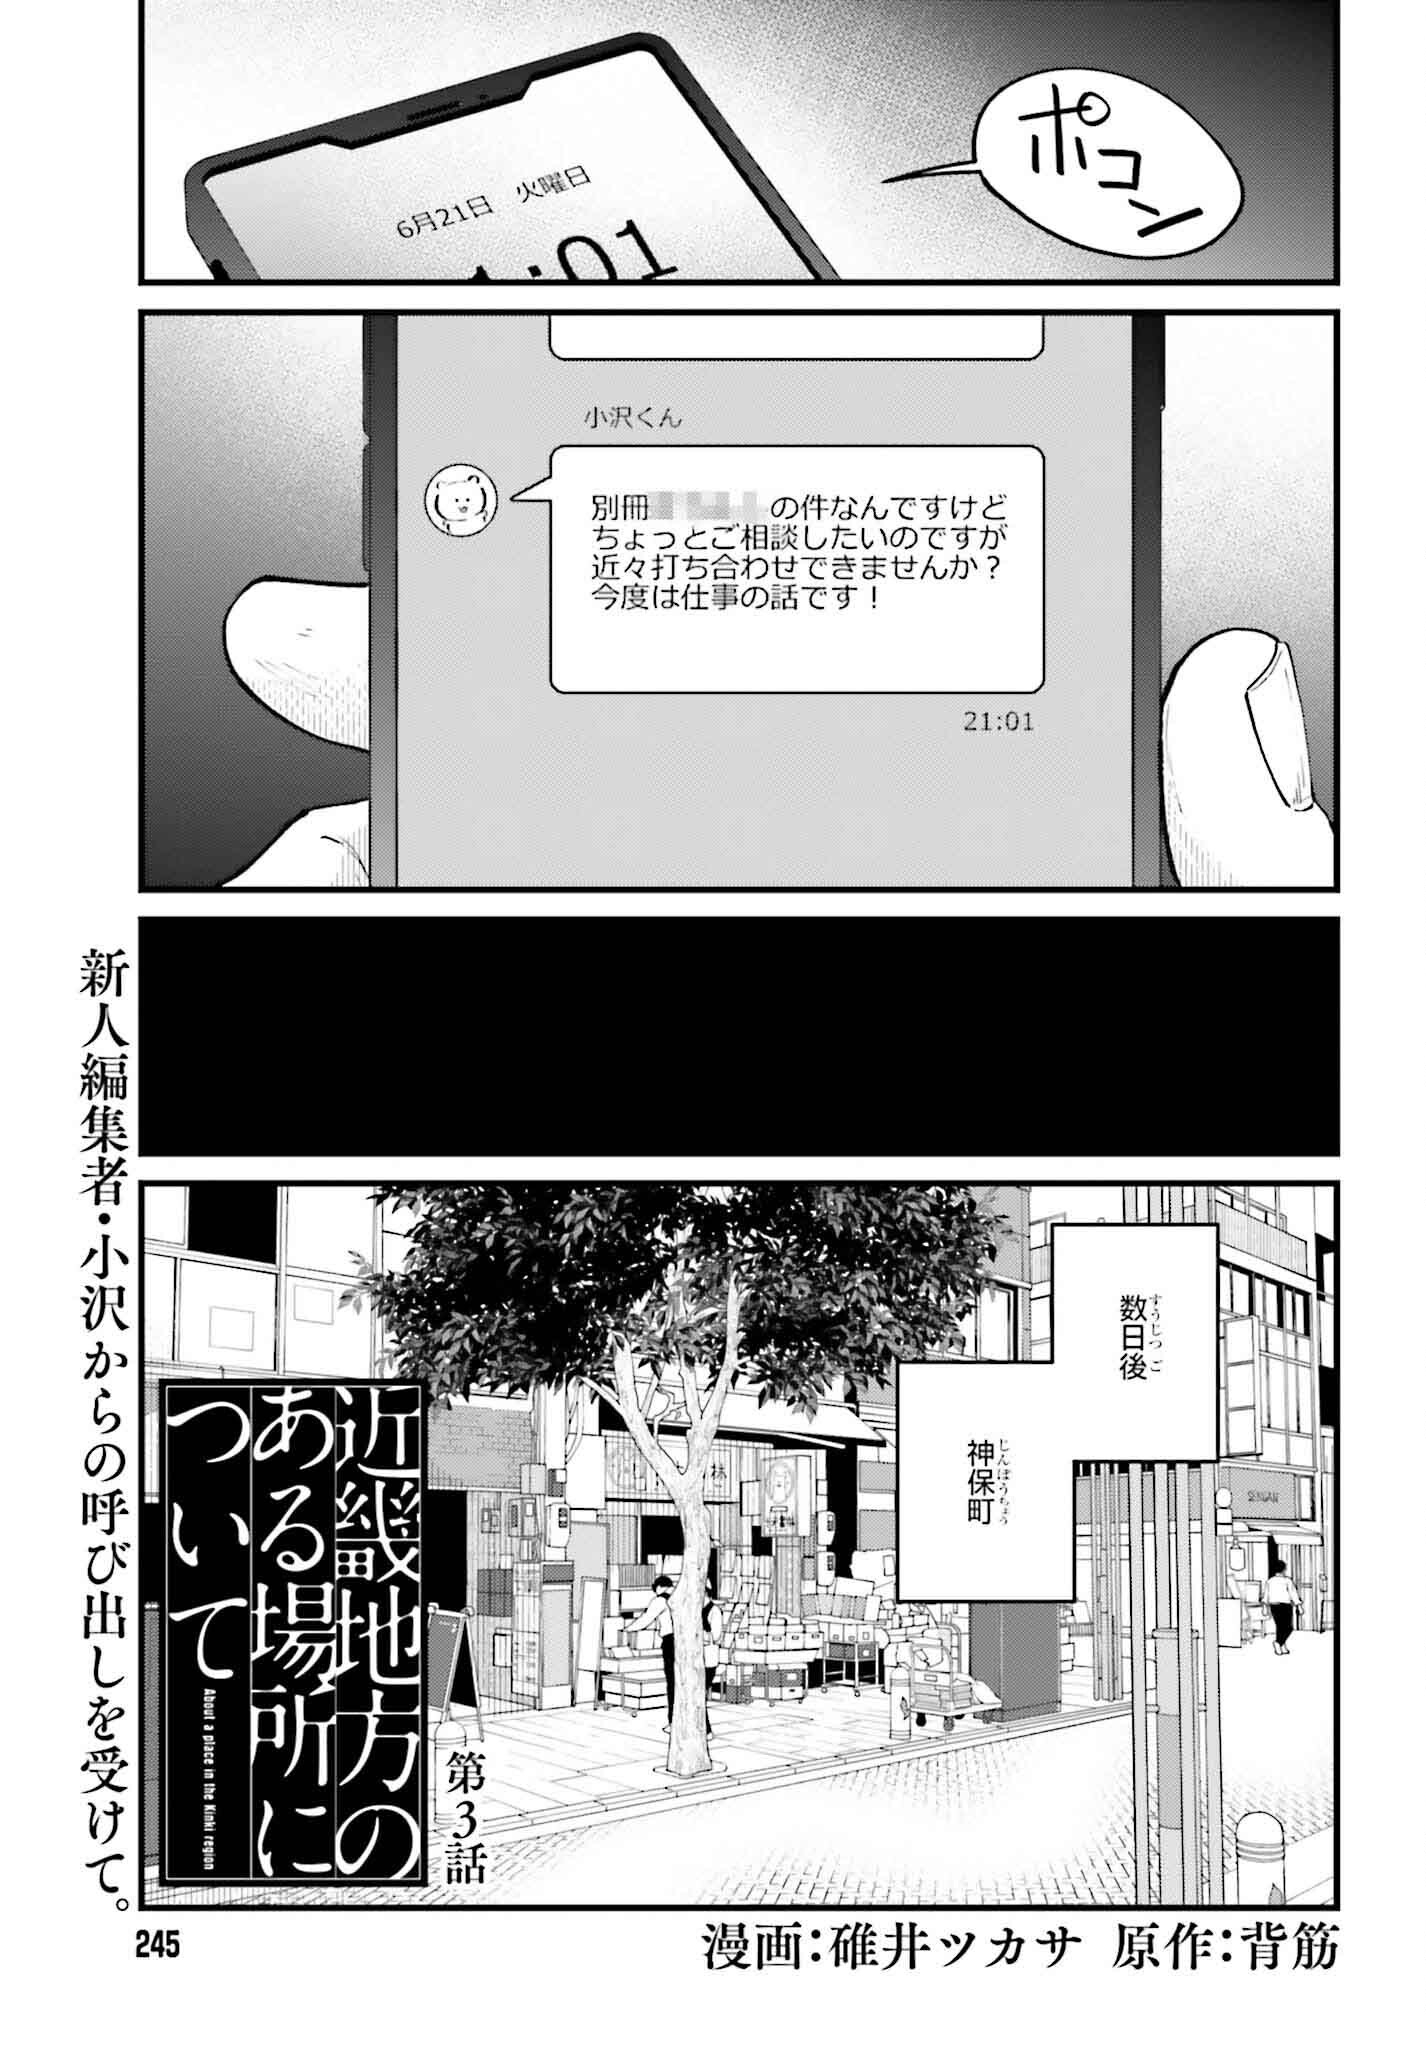 Kinki Chihou no Aru Basho ni Tsuite - Chapter 3 - Page 1